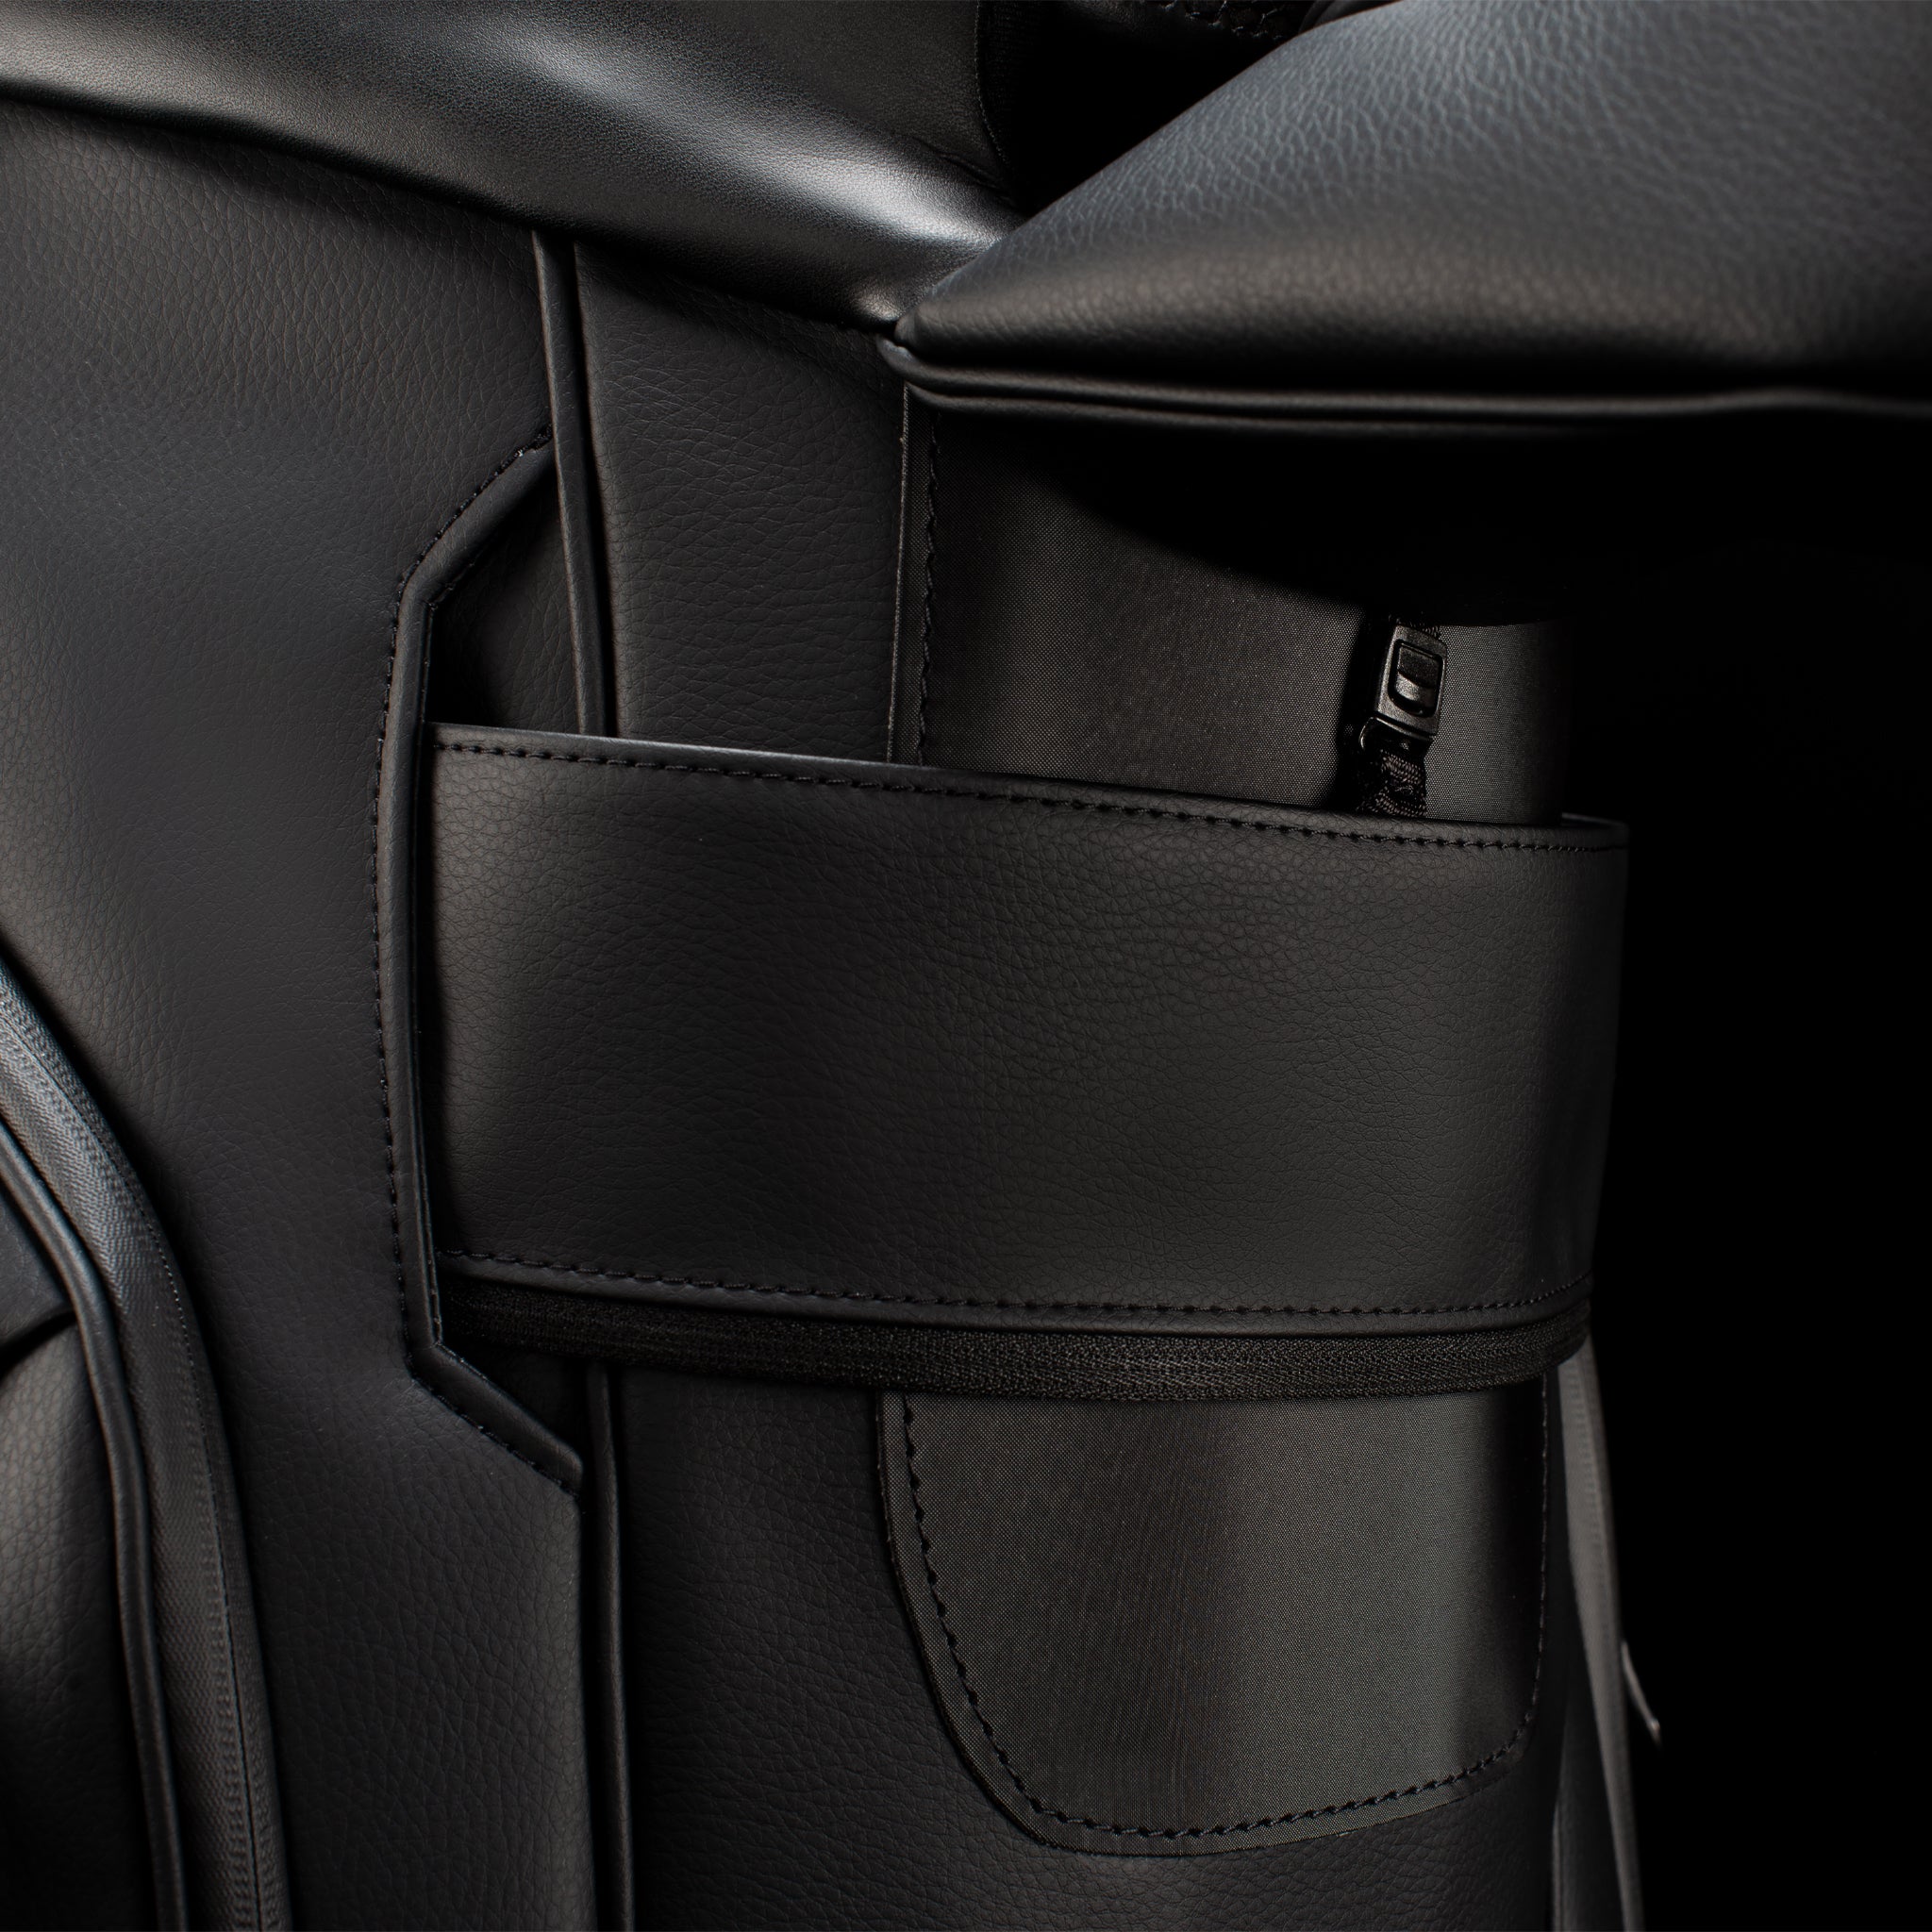 Close up of cart strap click under pocket on black leather cart bag